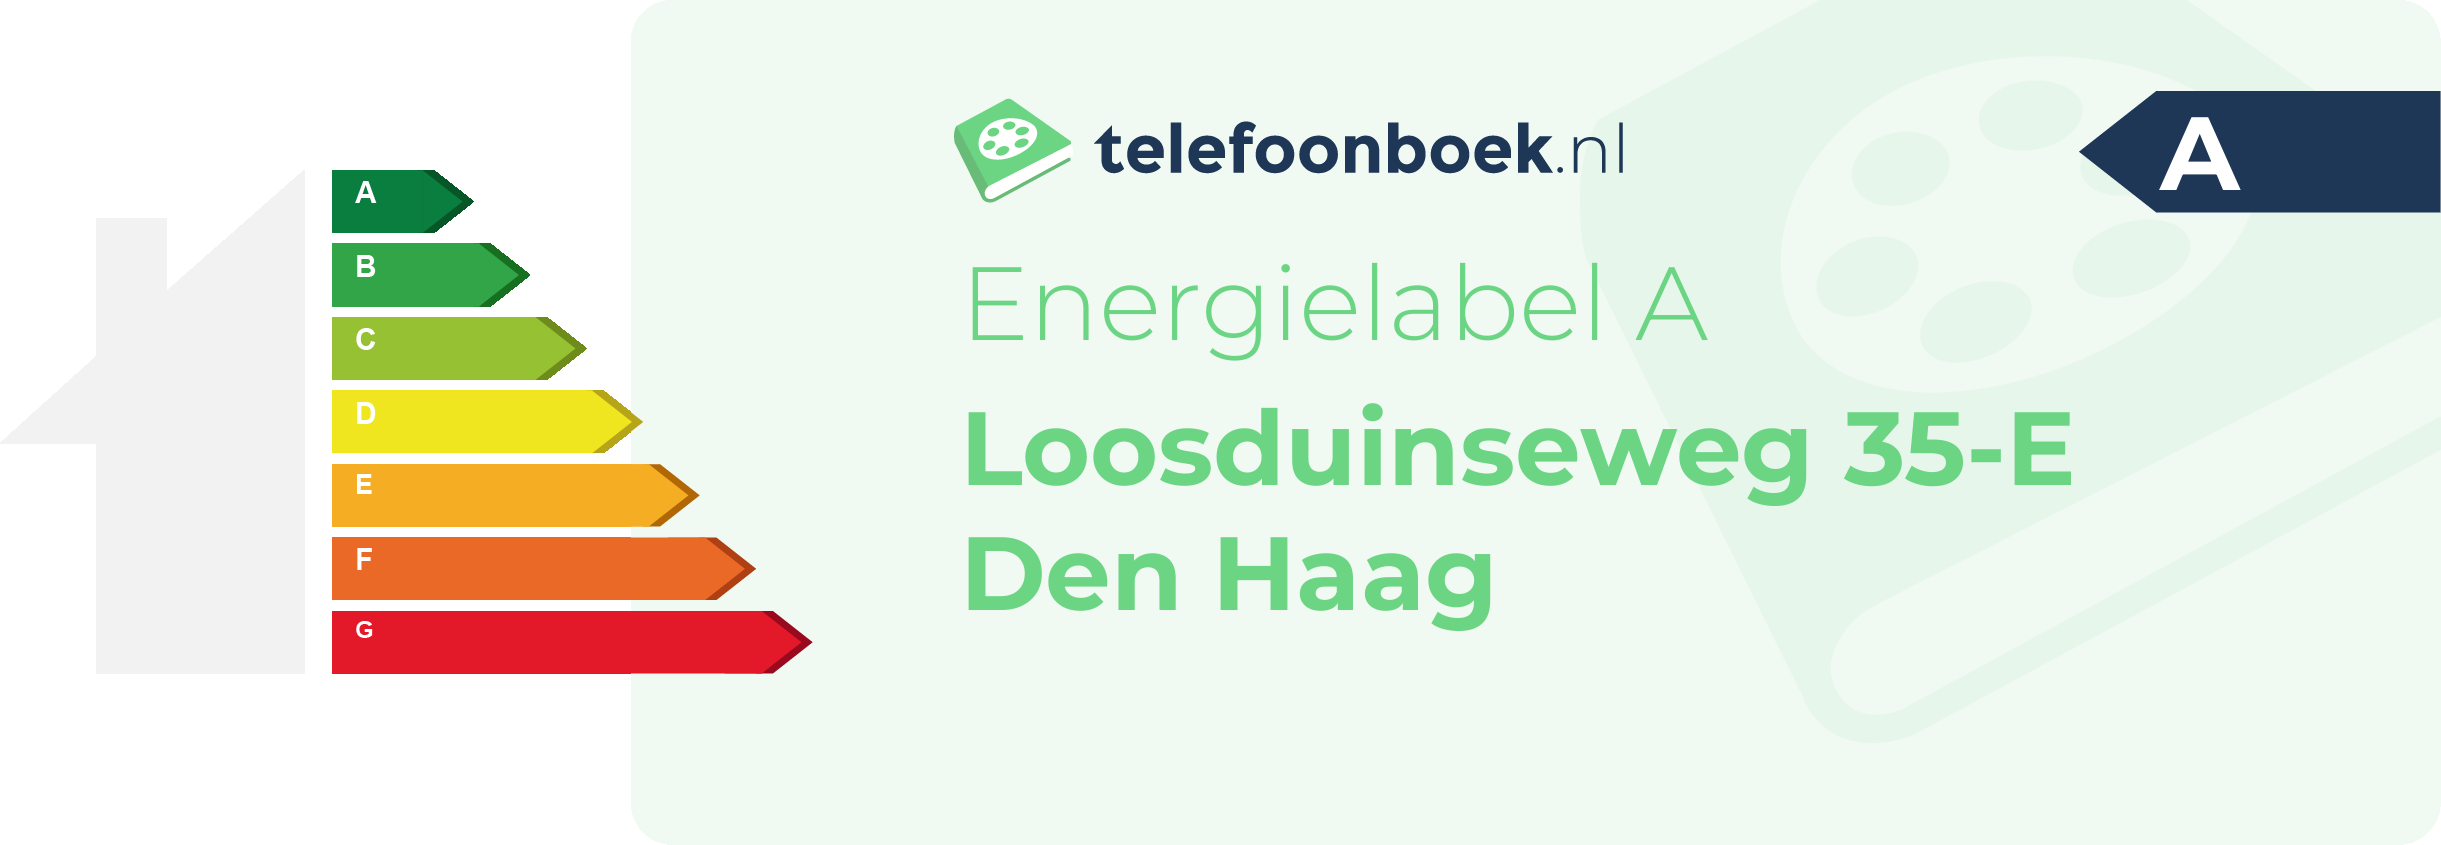 Energielabel Loosduinseweg 35-E Den Haag